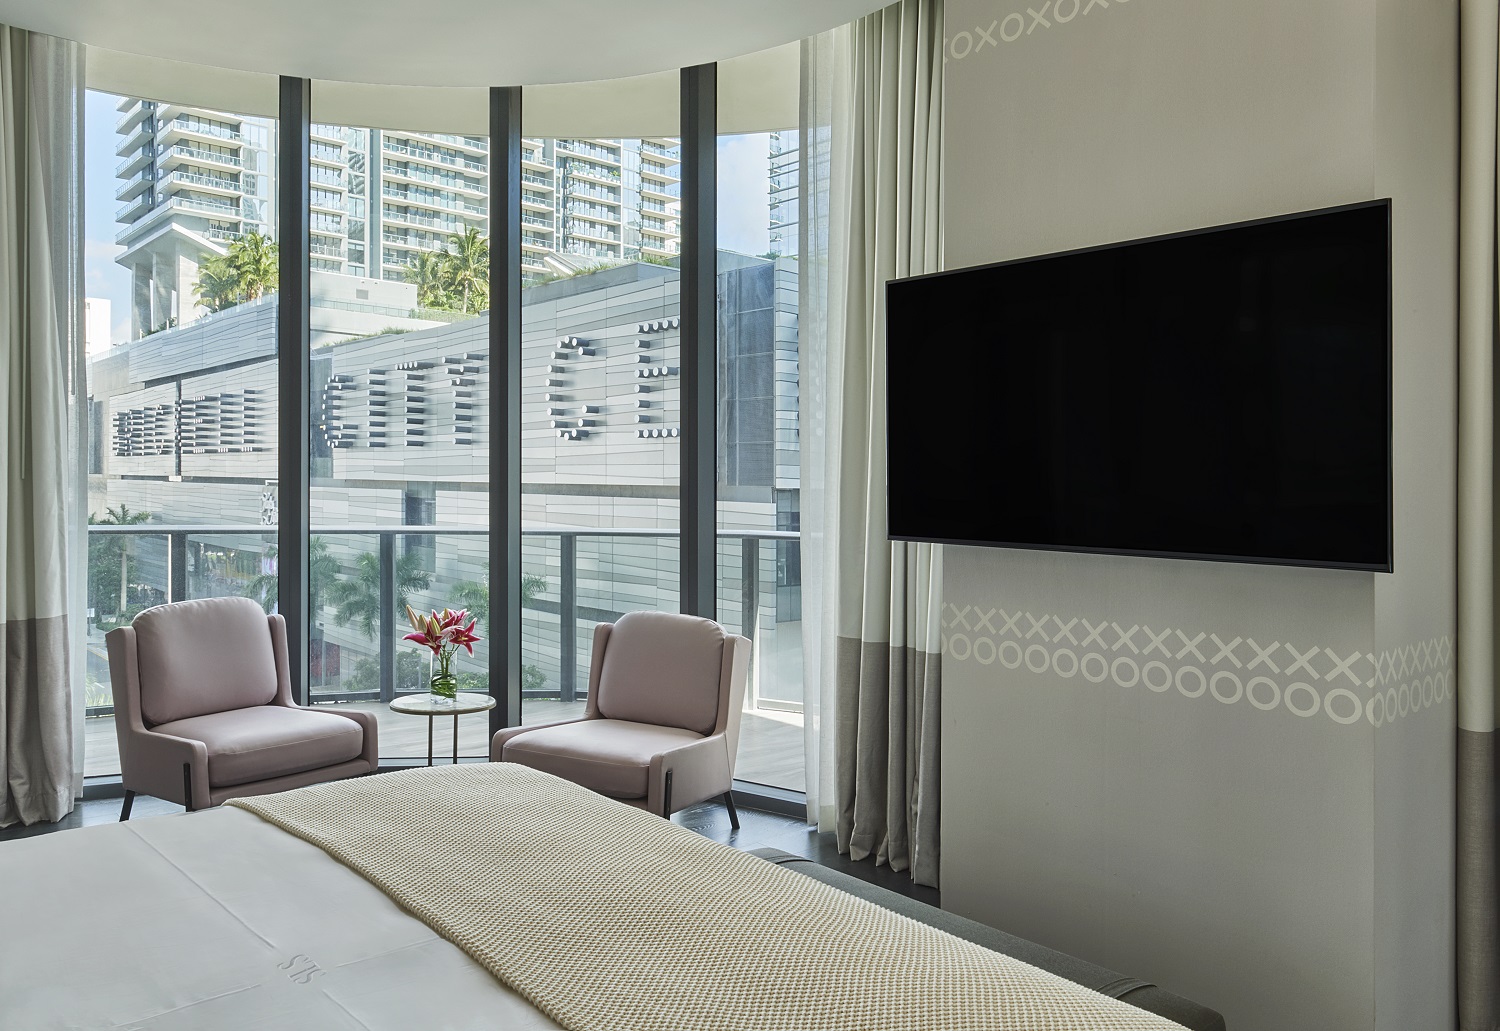 Lujosa habitación de hotel con cama king-size y elegante televisor de pantalla plana.